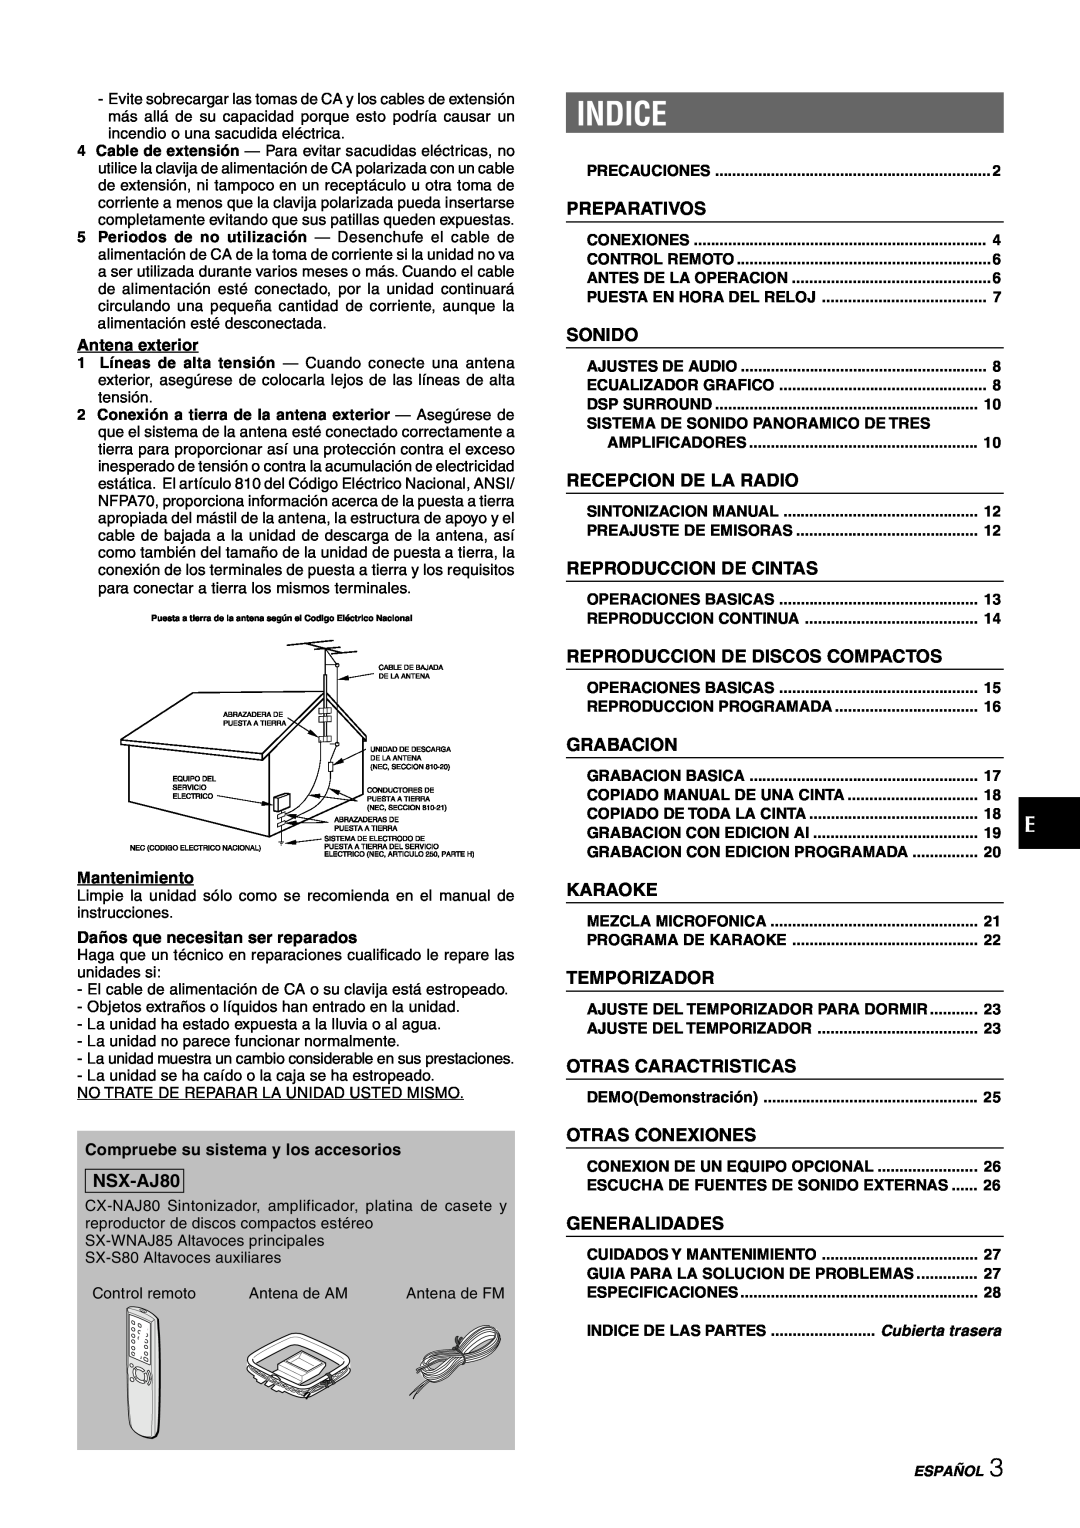 Sony NSX-AJ80 manual Indice, Preparativos, Sonido, Recepcion De La Radio, Reproduccion De Cintas, Grabacion, Karaoke 